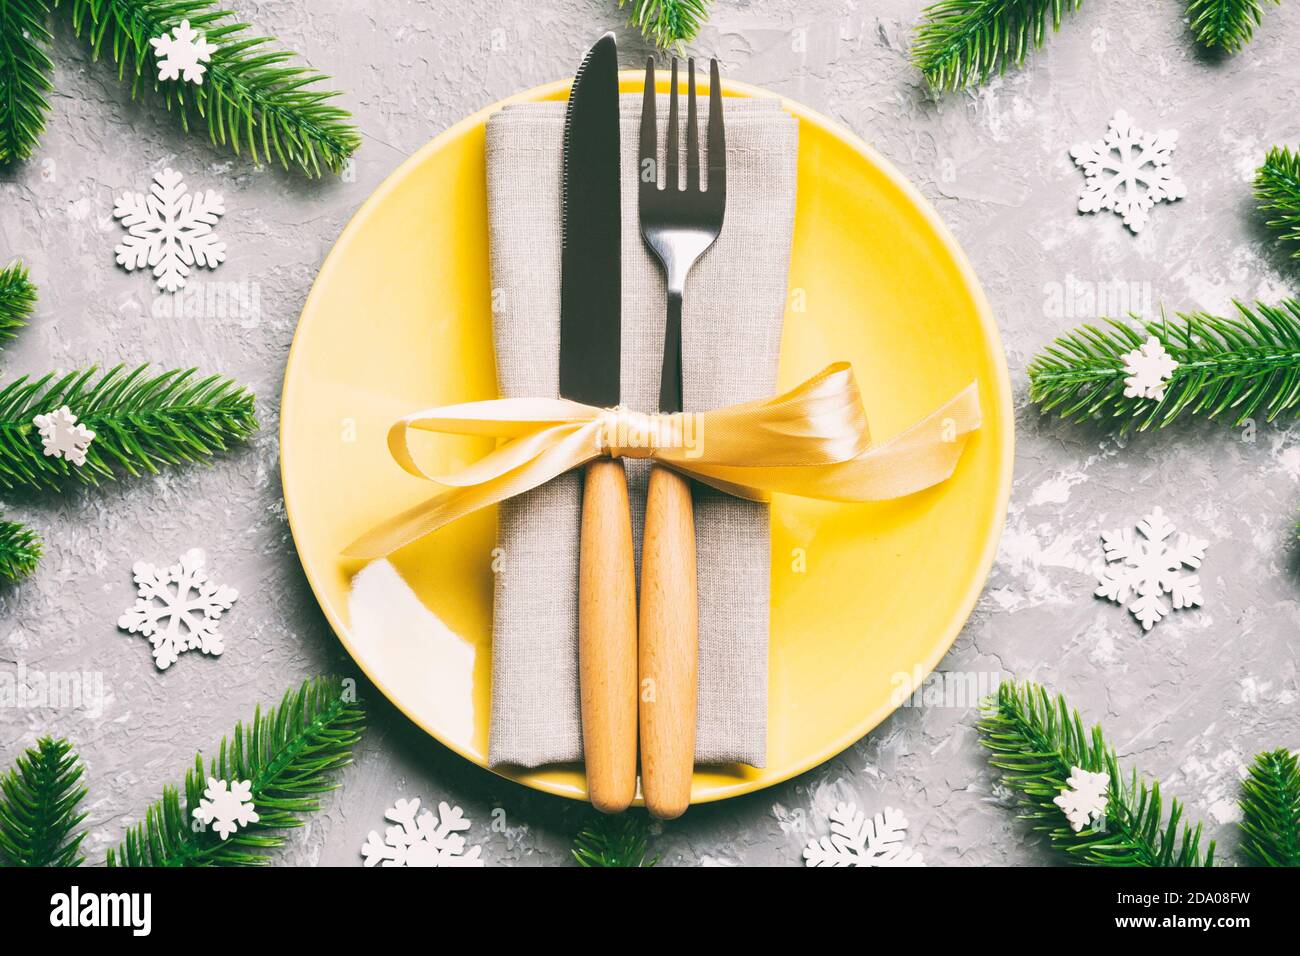 Vue de dessus de nouvelle année le dîner de fête sur fond de ciment. Composition de l'assiette, fourchette, couteau, sapin et de décorations. Joyeux Noël concept. Banque D'Images